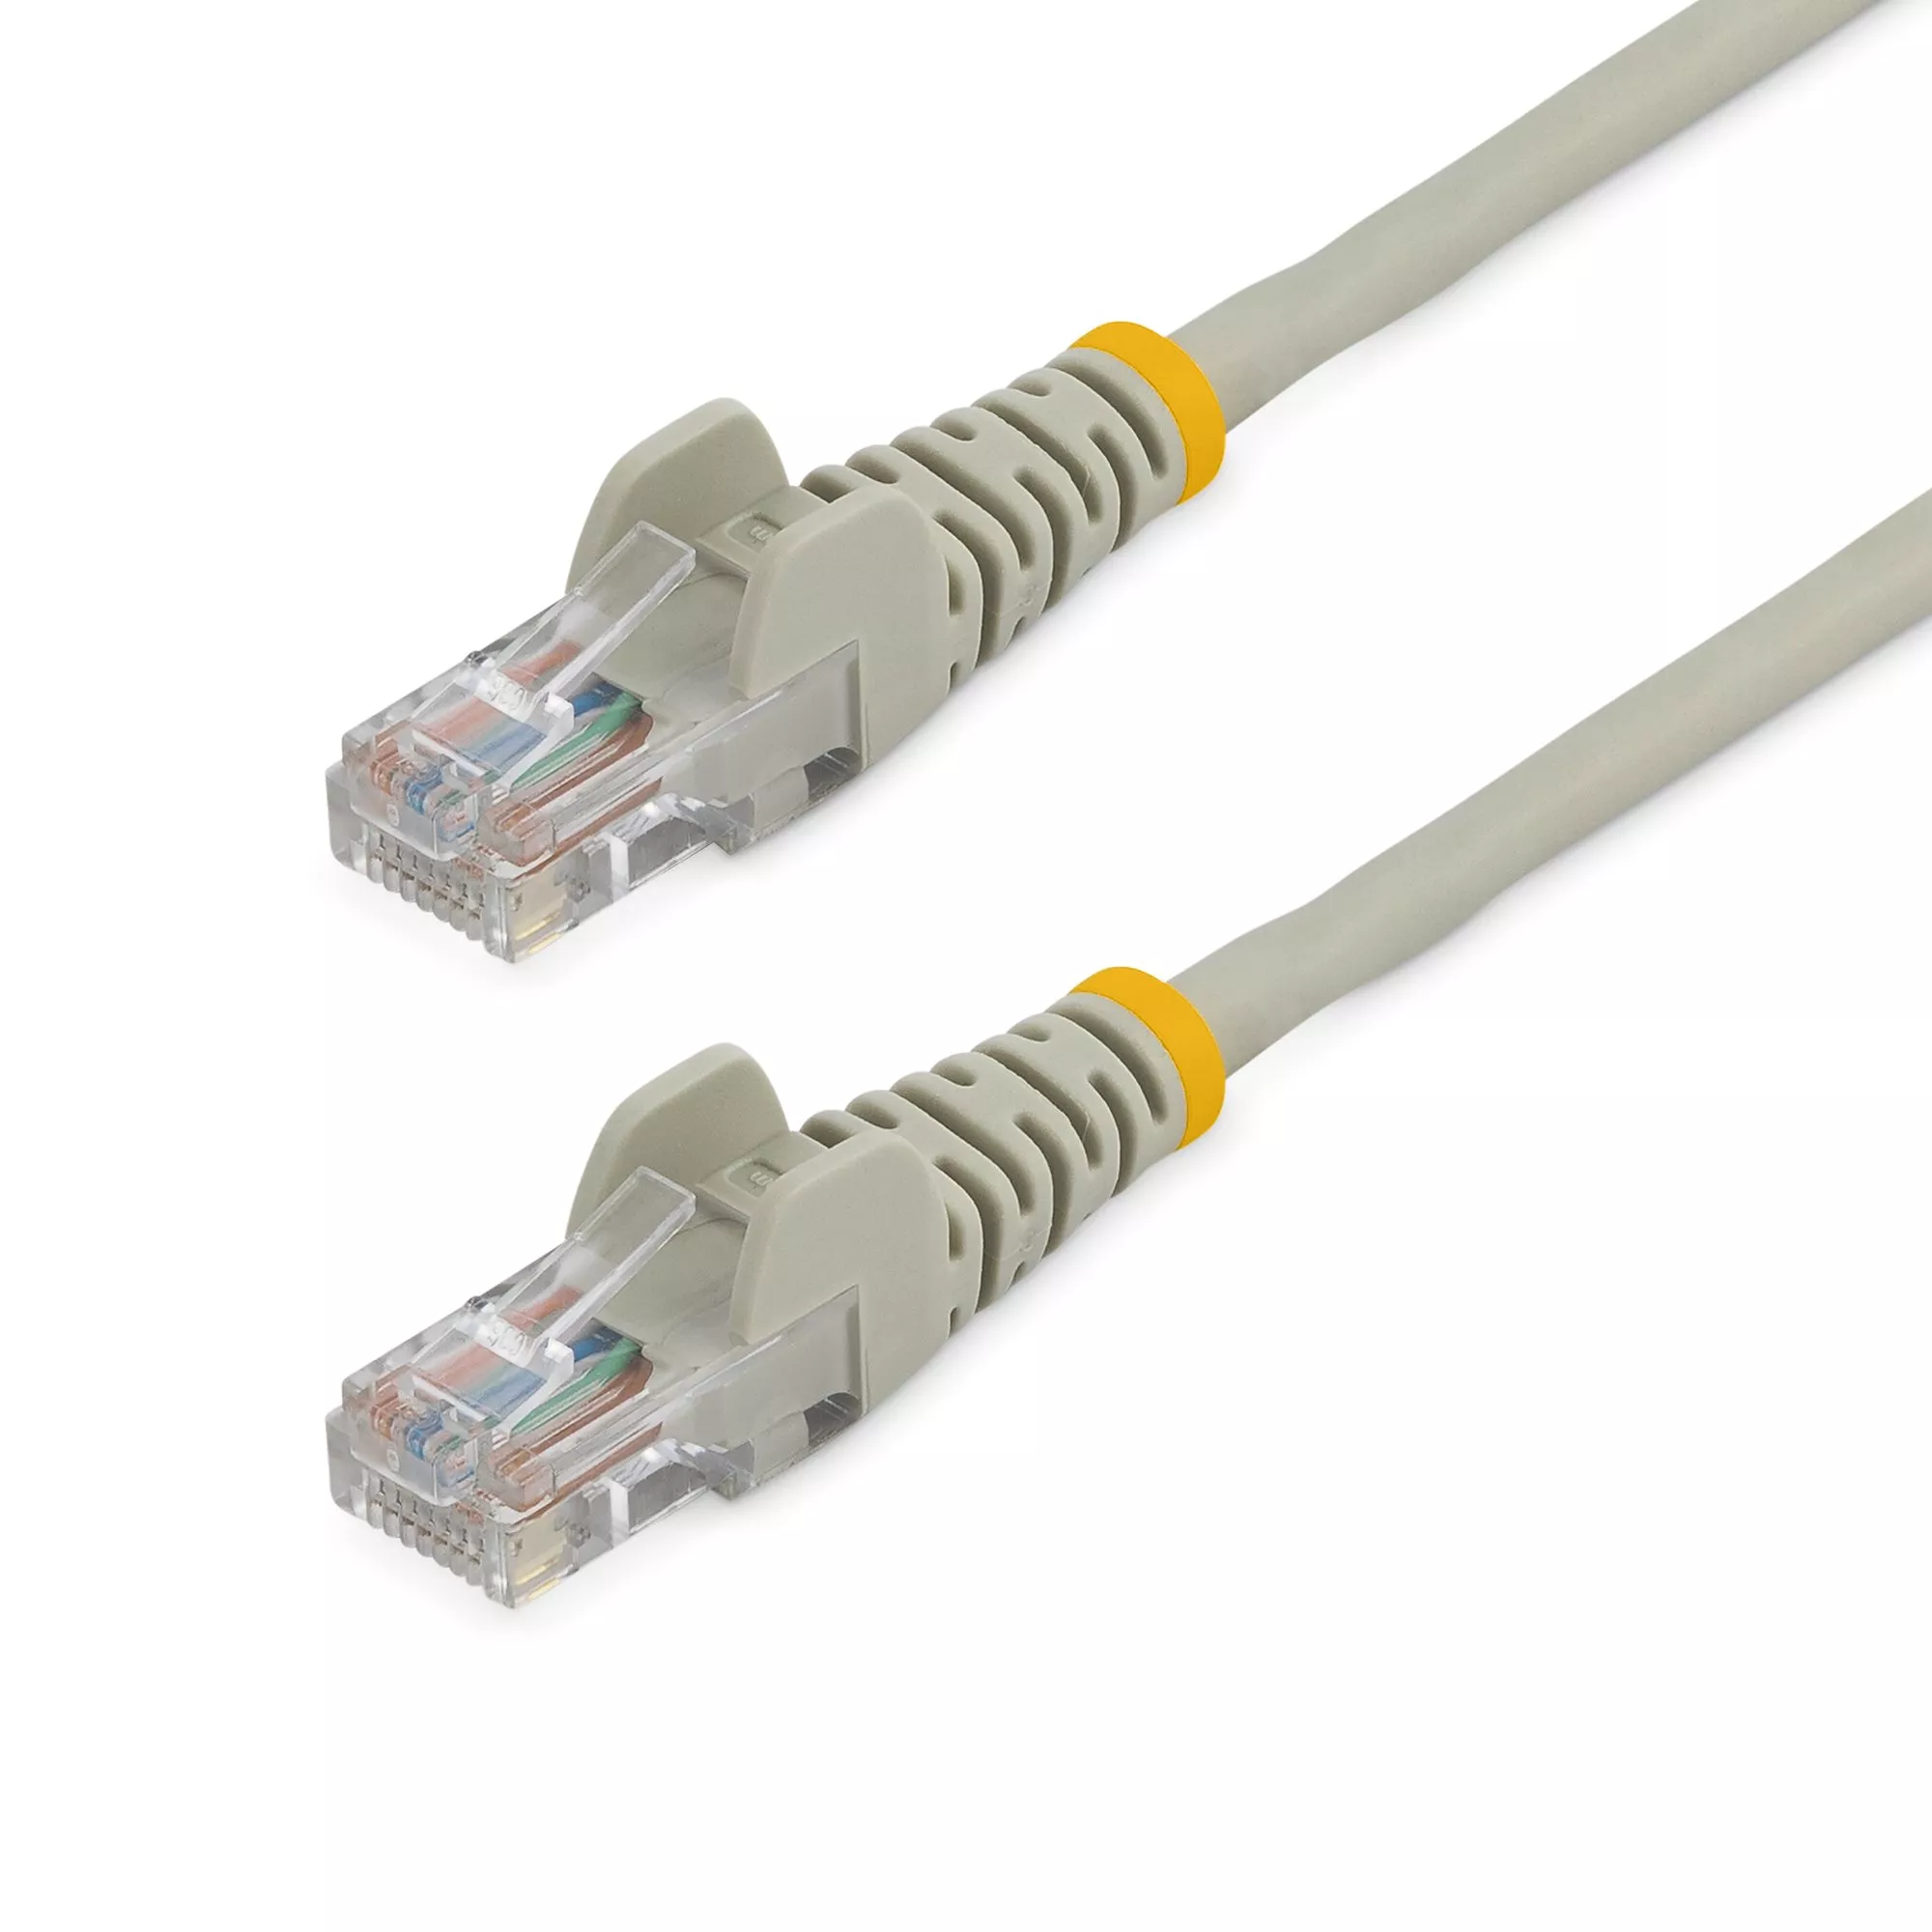 Achat StarTech.com Câble réseau Cat5e sans crochet de 10 m - Gris et autres produits de la marque StarTech.com